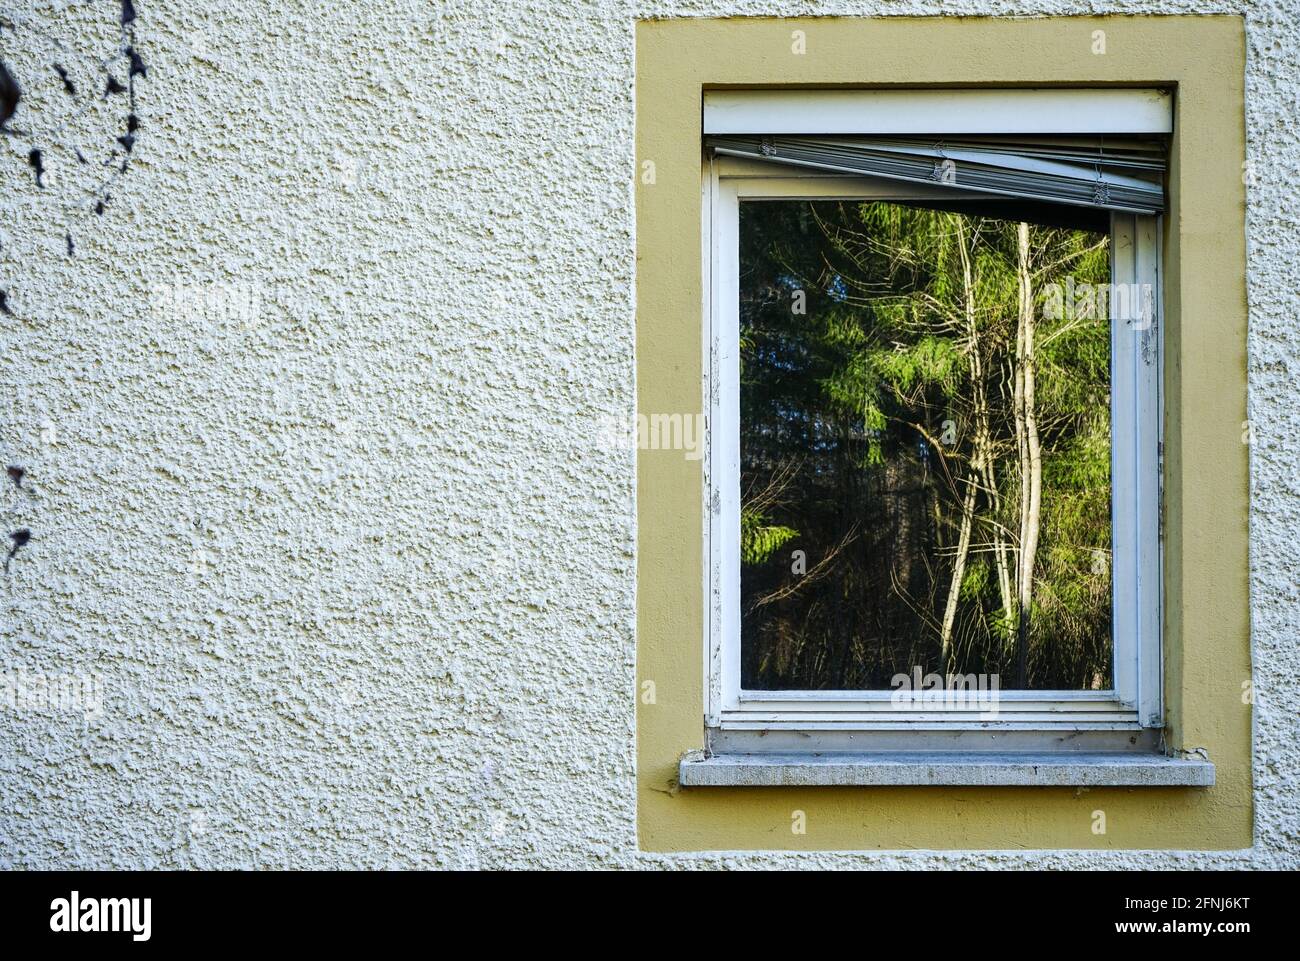 Alberi e case riflesse nella luce del sole di mezzogiorno in finestre di case di fronte. Bellissimi riflessi di alberi e case. Foto Stock